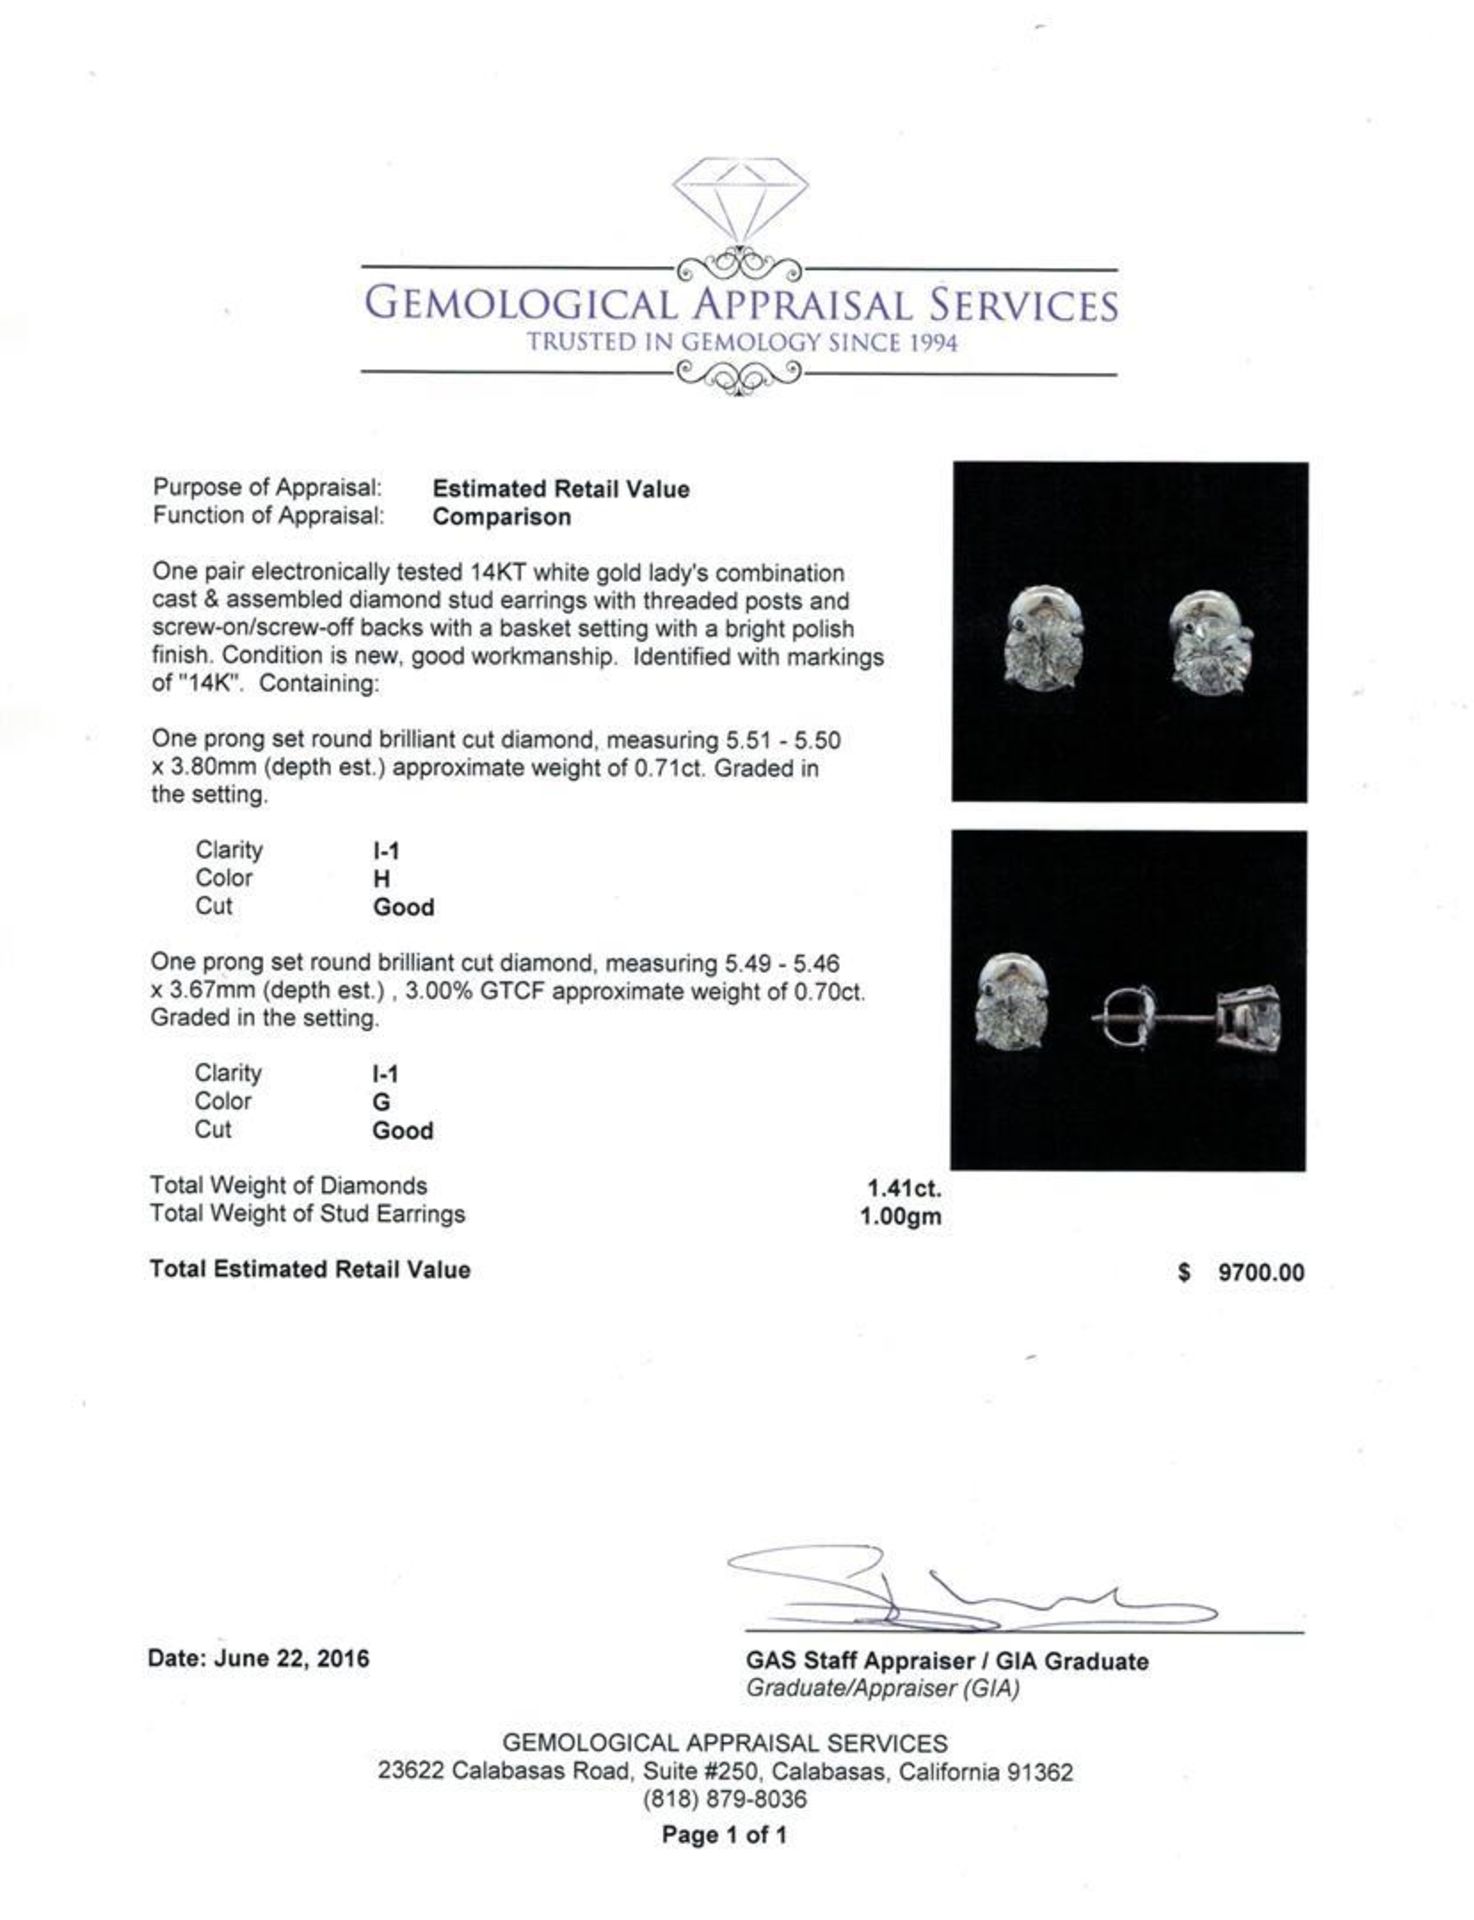 1.41 ctw Diamond Stud Earrings - 14KT White Gold - Image 3 of 3